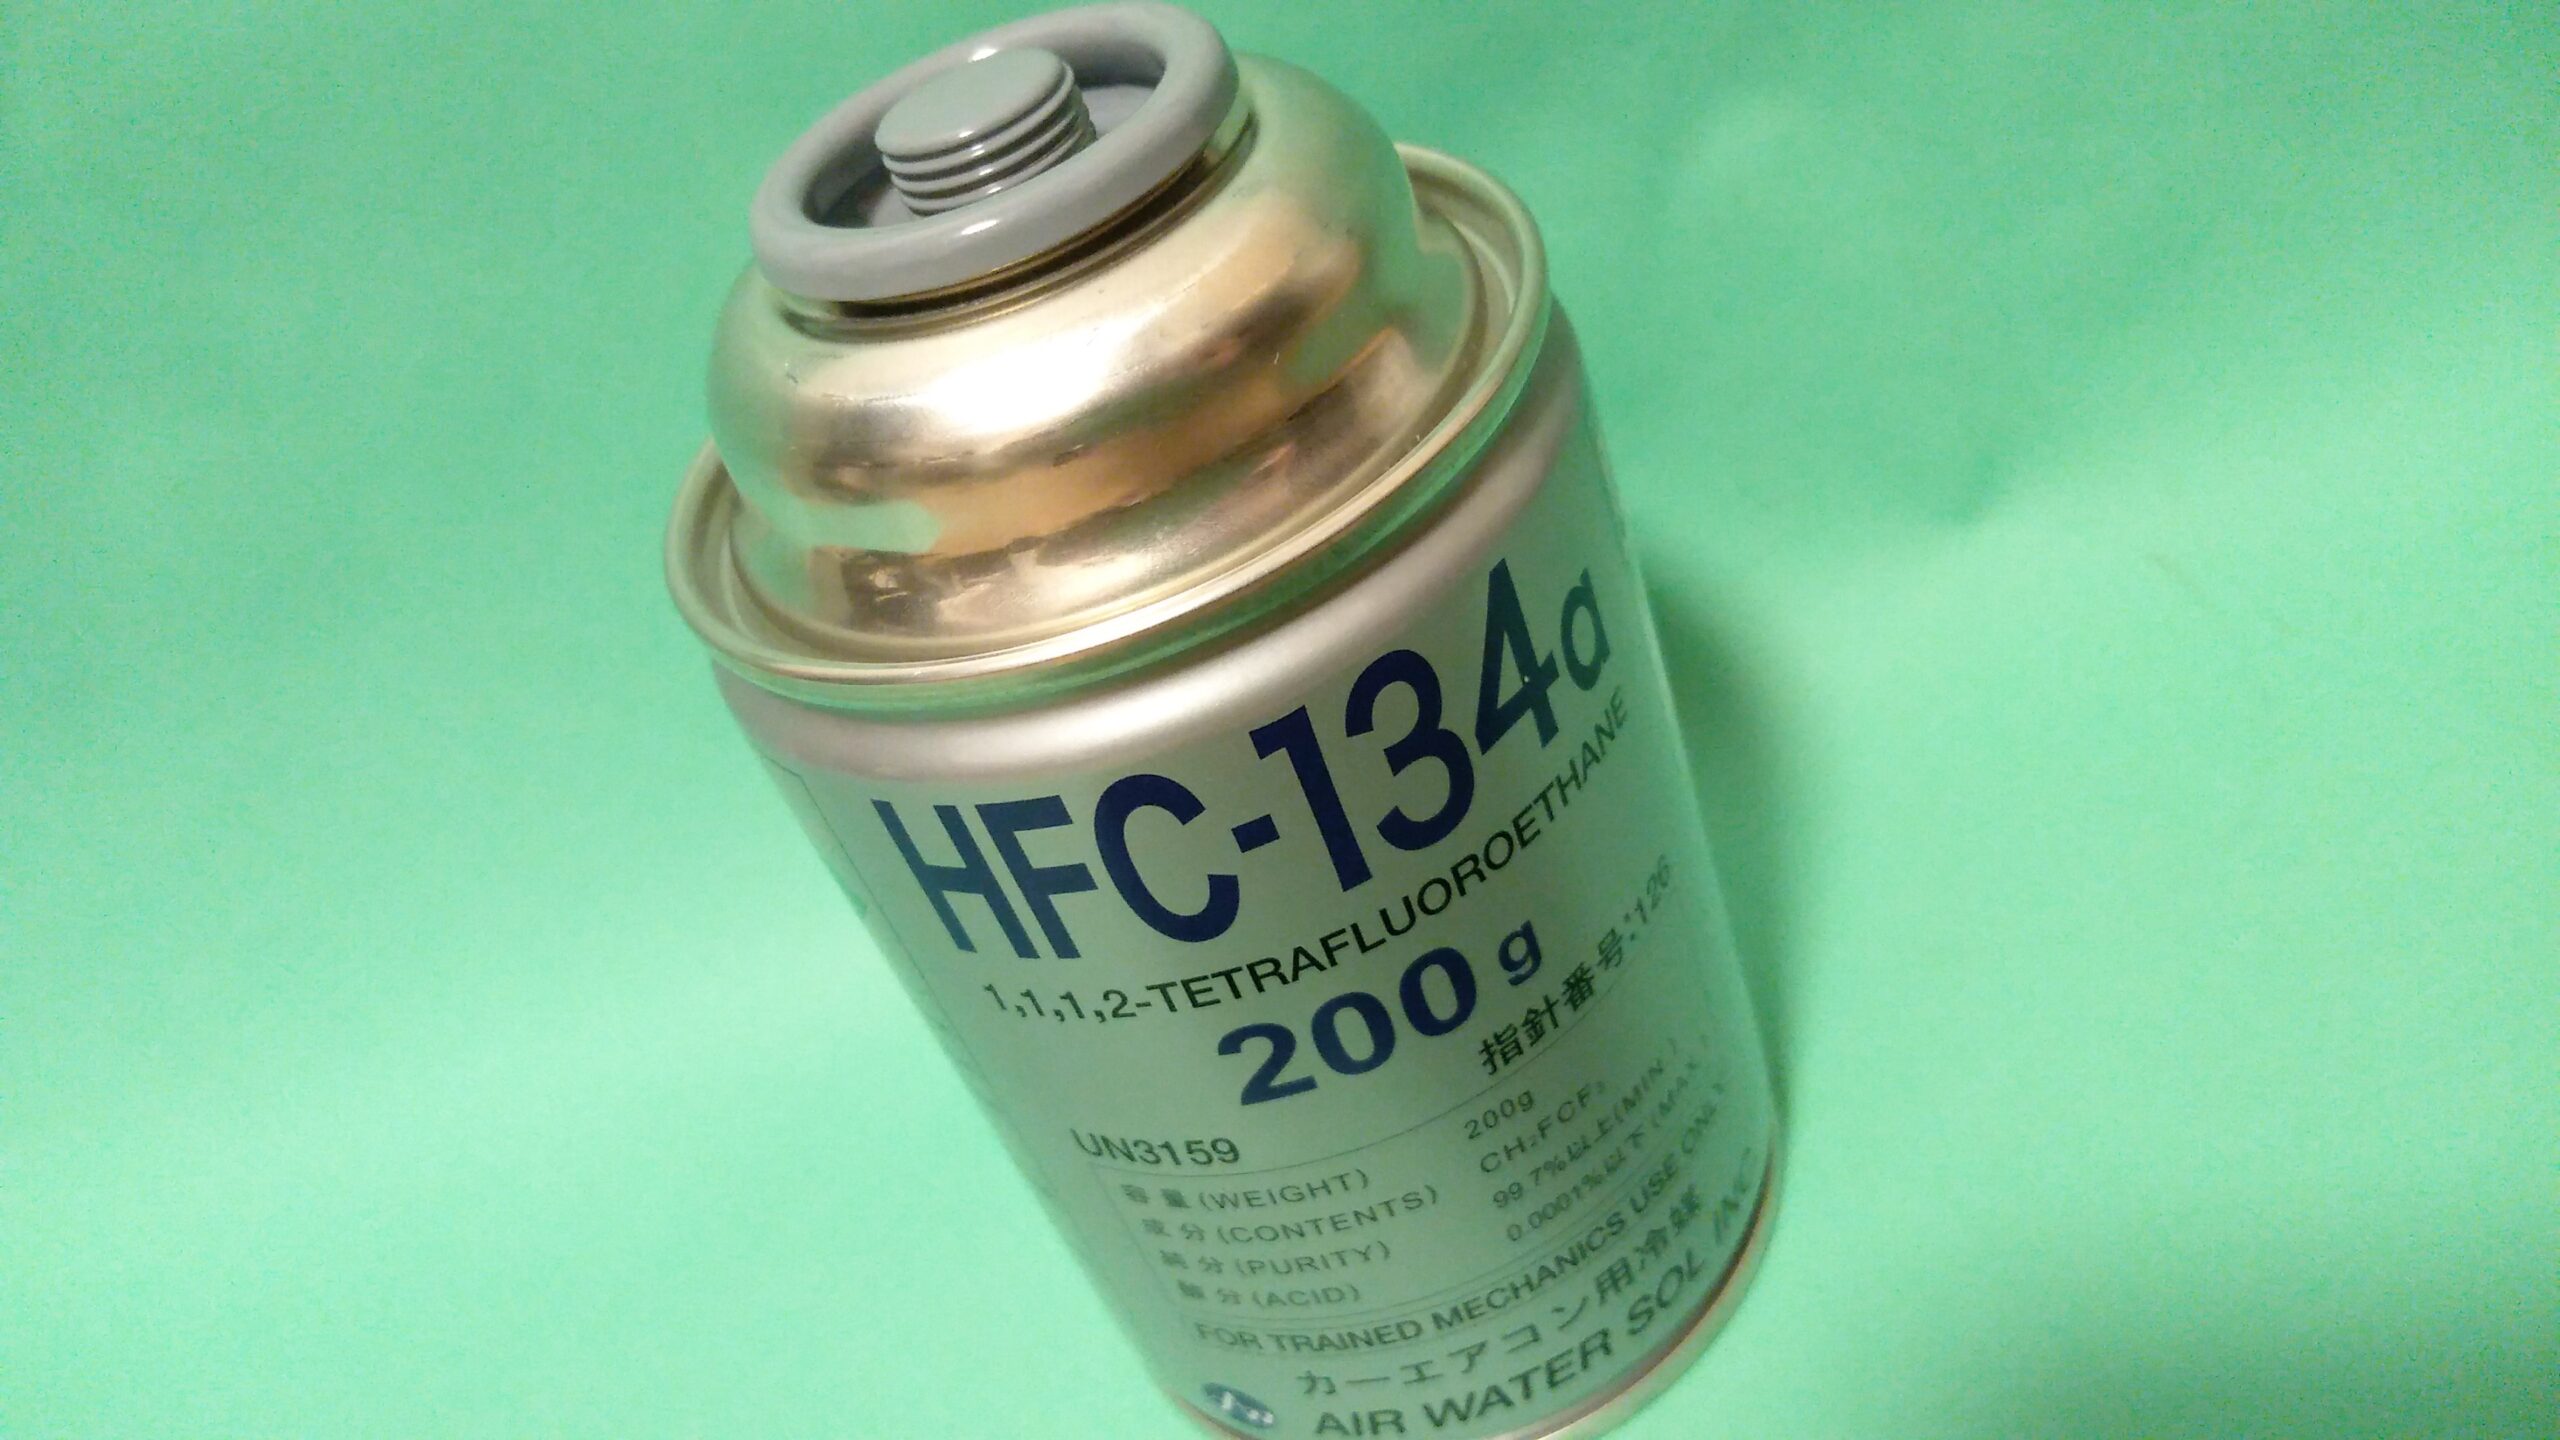 HFC-134a